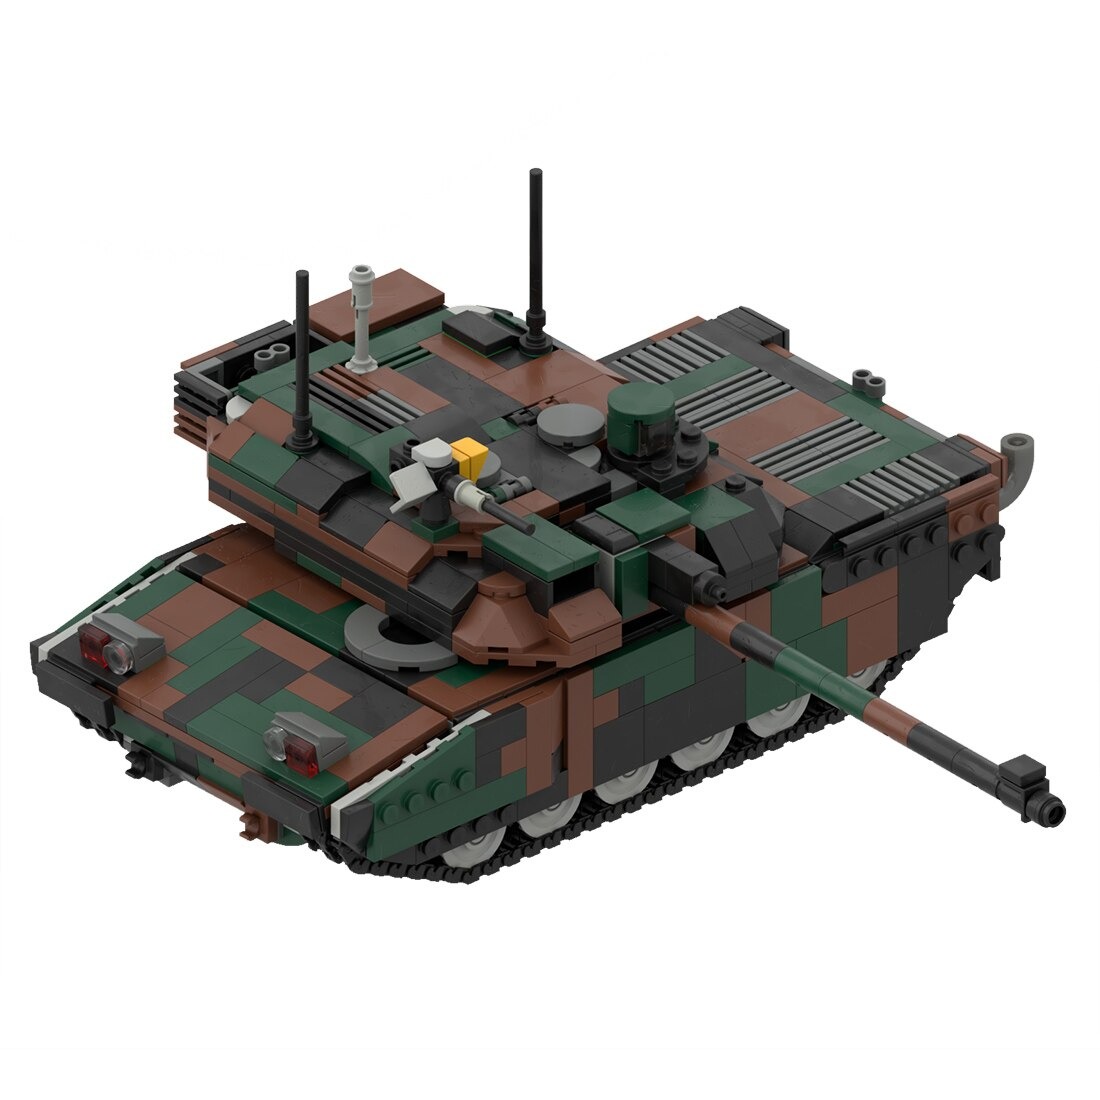 moc 34858 leclerc main battle tank model main 2 - WANGE Block